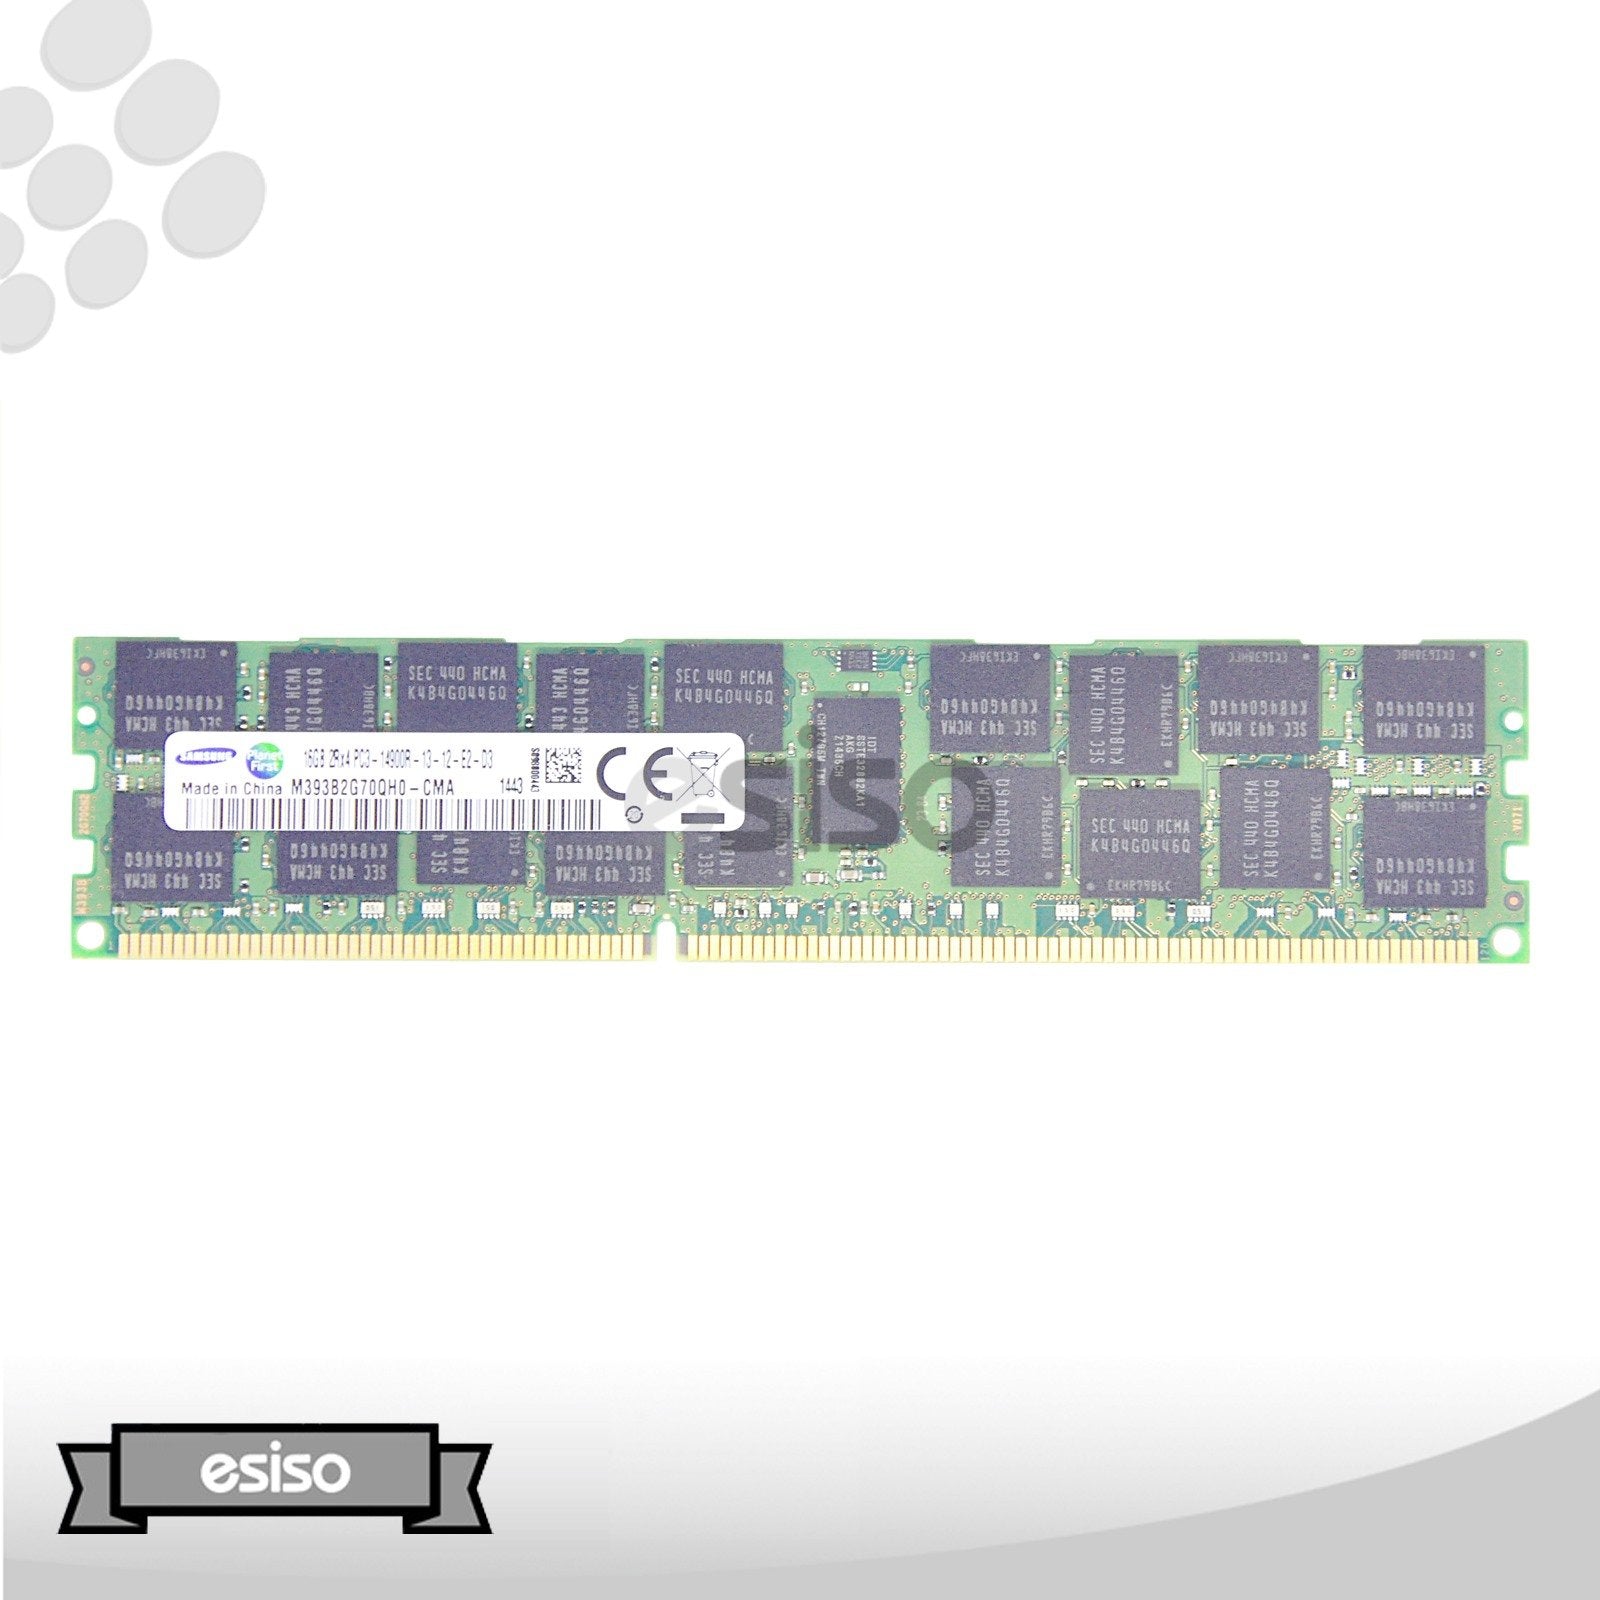 LOT OF 2 M393B2G70QH0-CMA SAMSUNG 16GB 2RX4 PC3-14900R MEMORY MODULE (2X16GB)